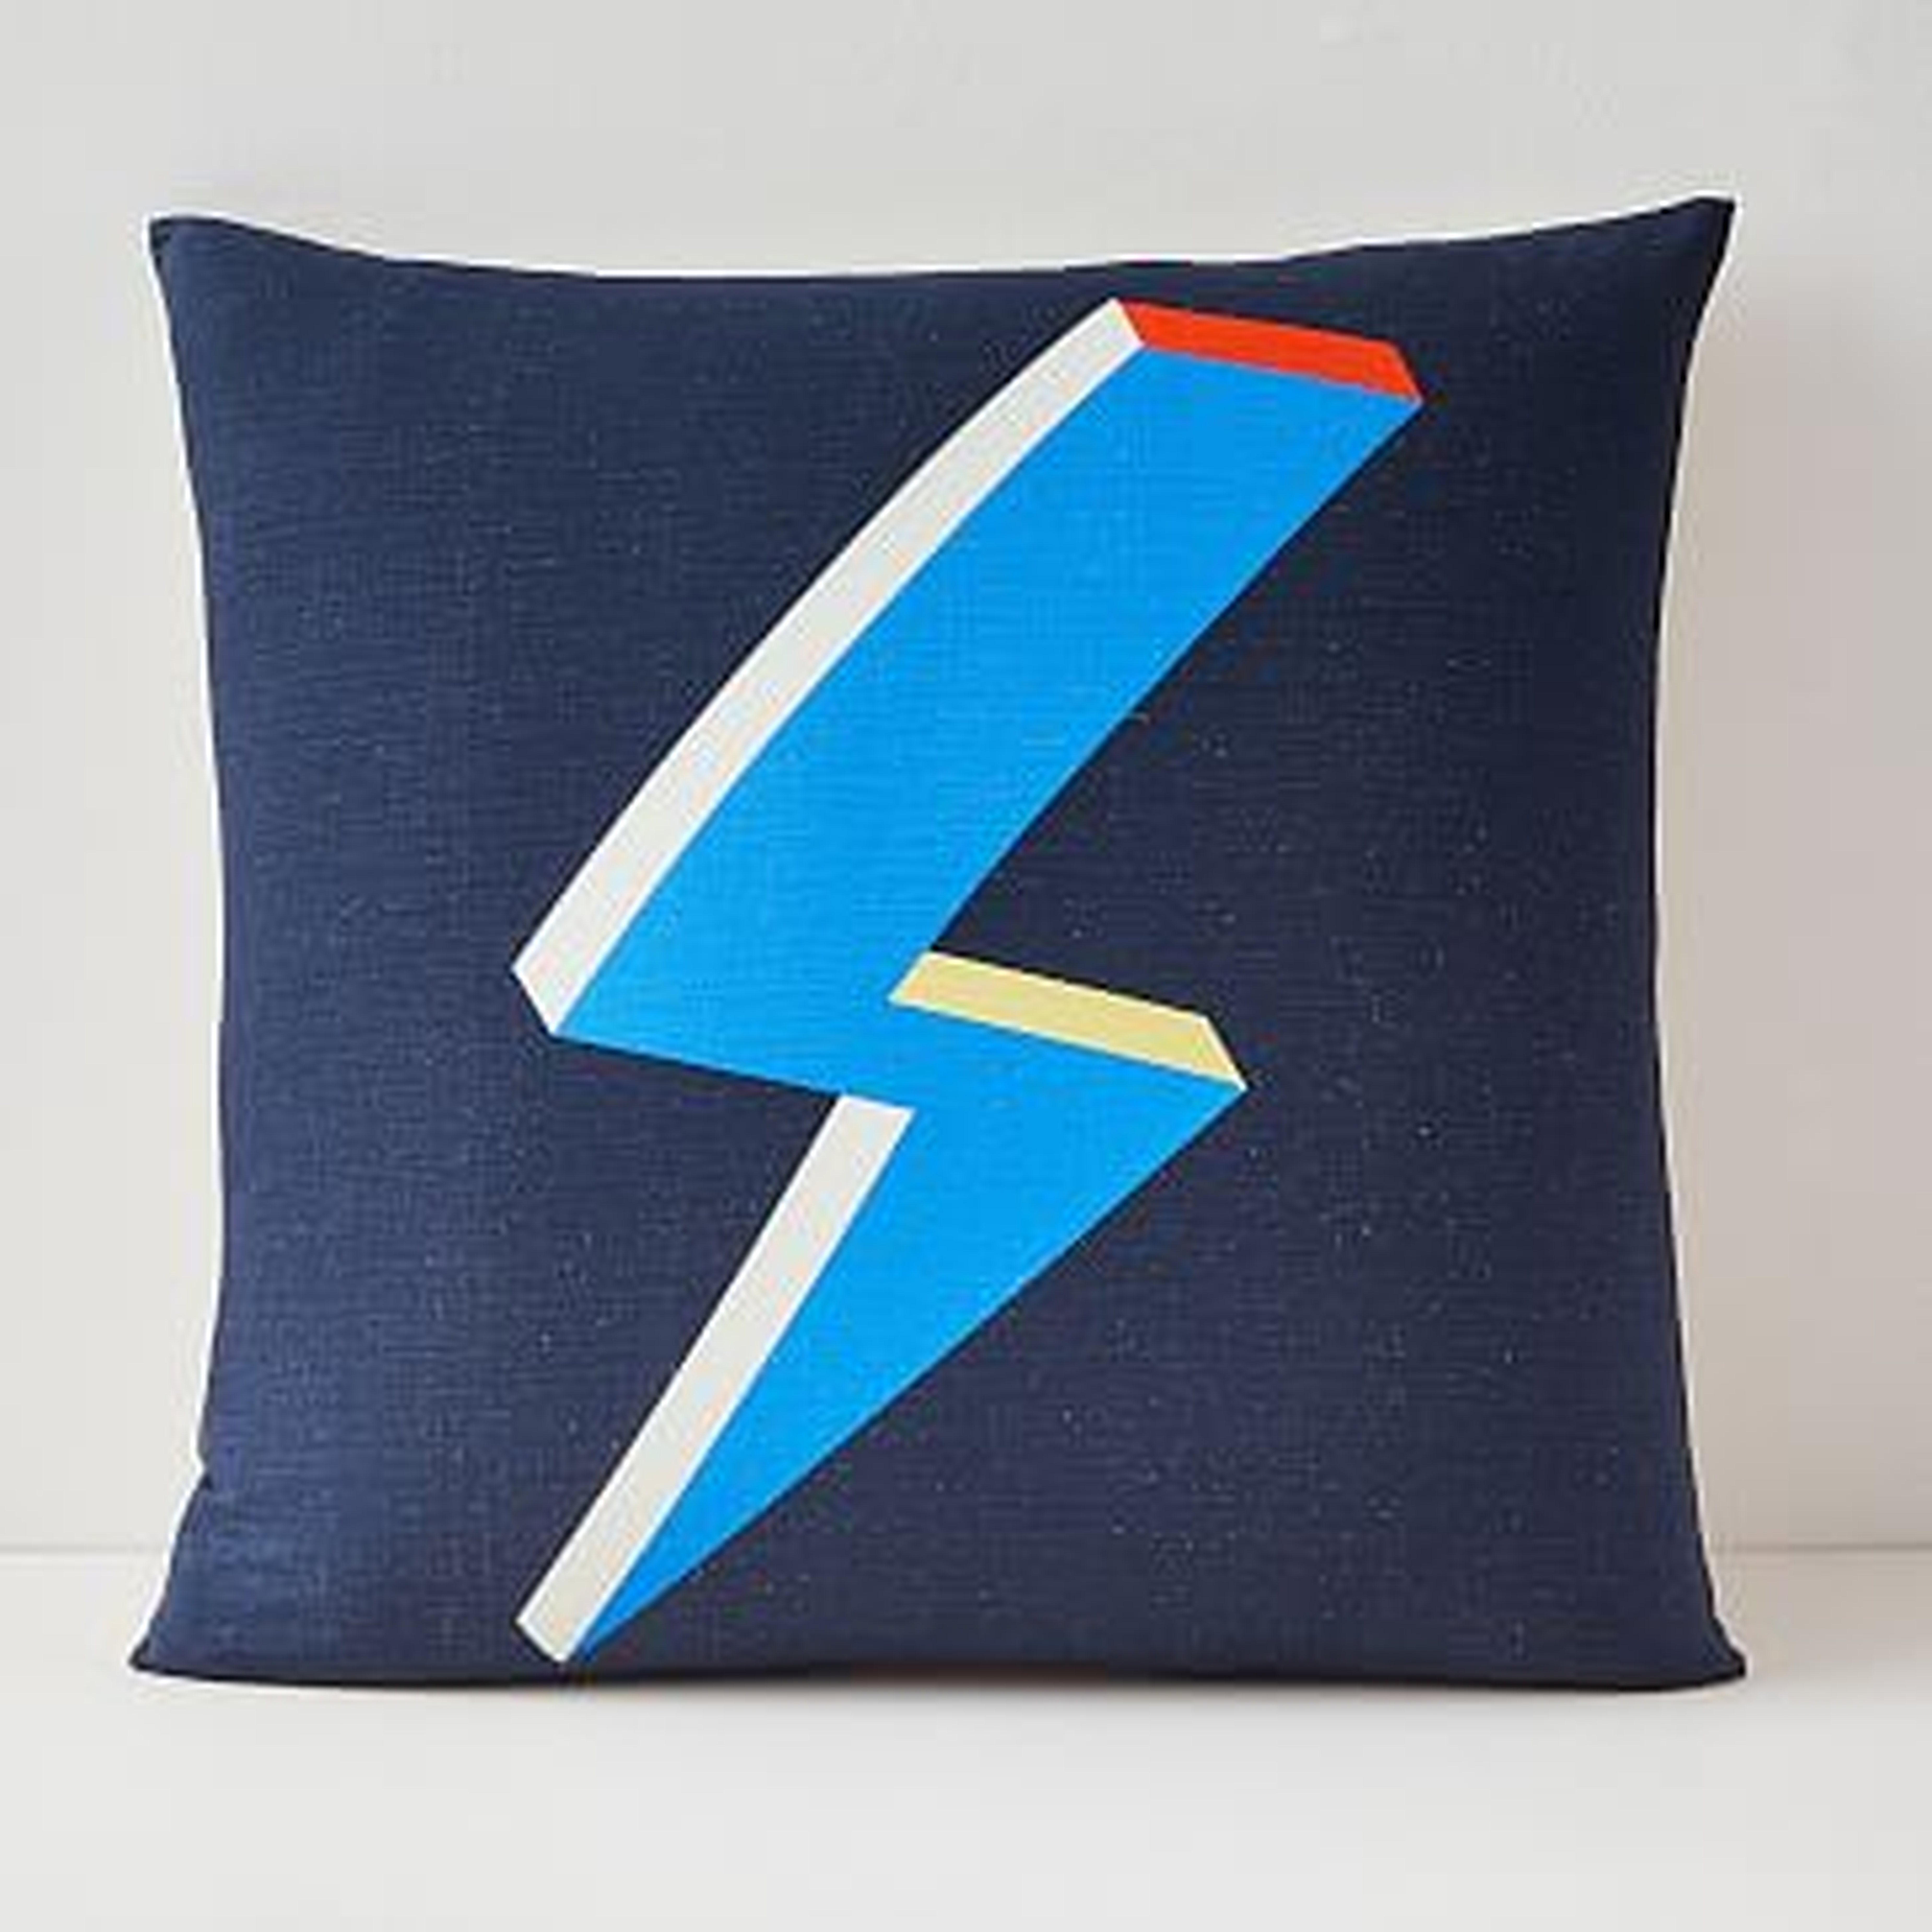 Lightning Bolt Pillow Cover, 20"x20", Midnight - West Elm